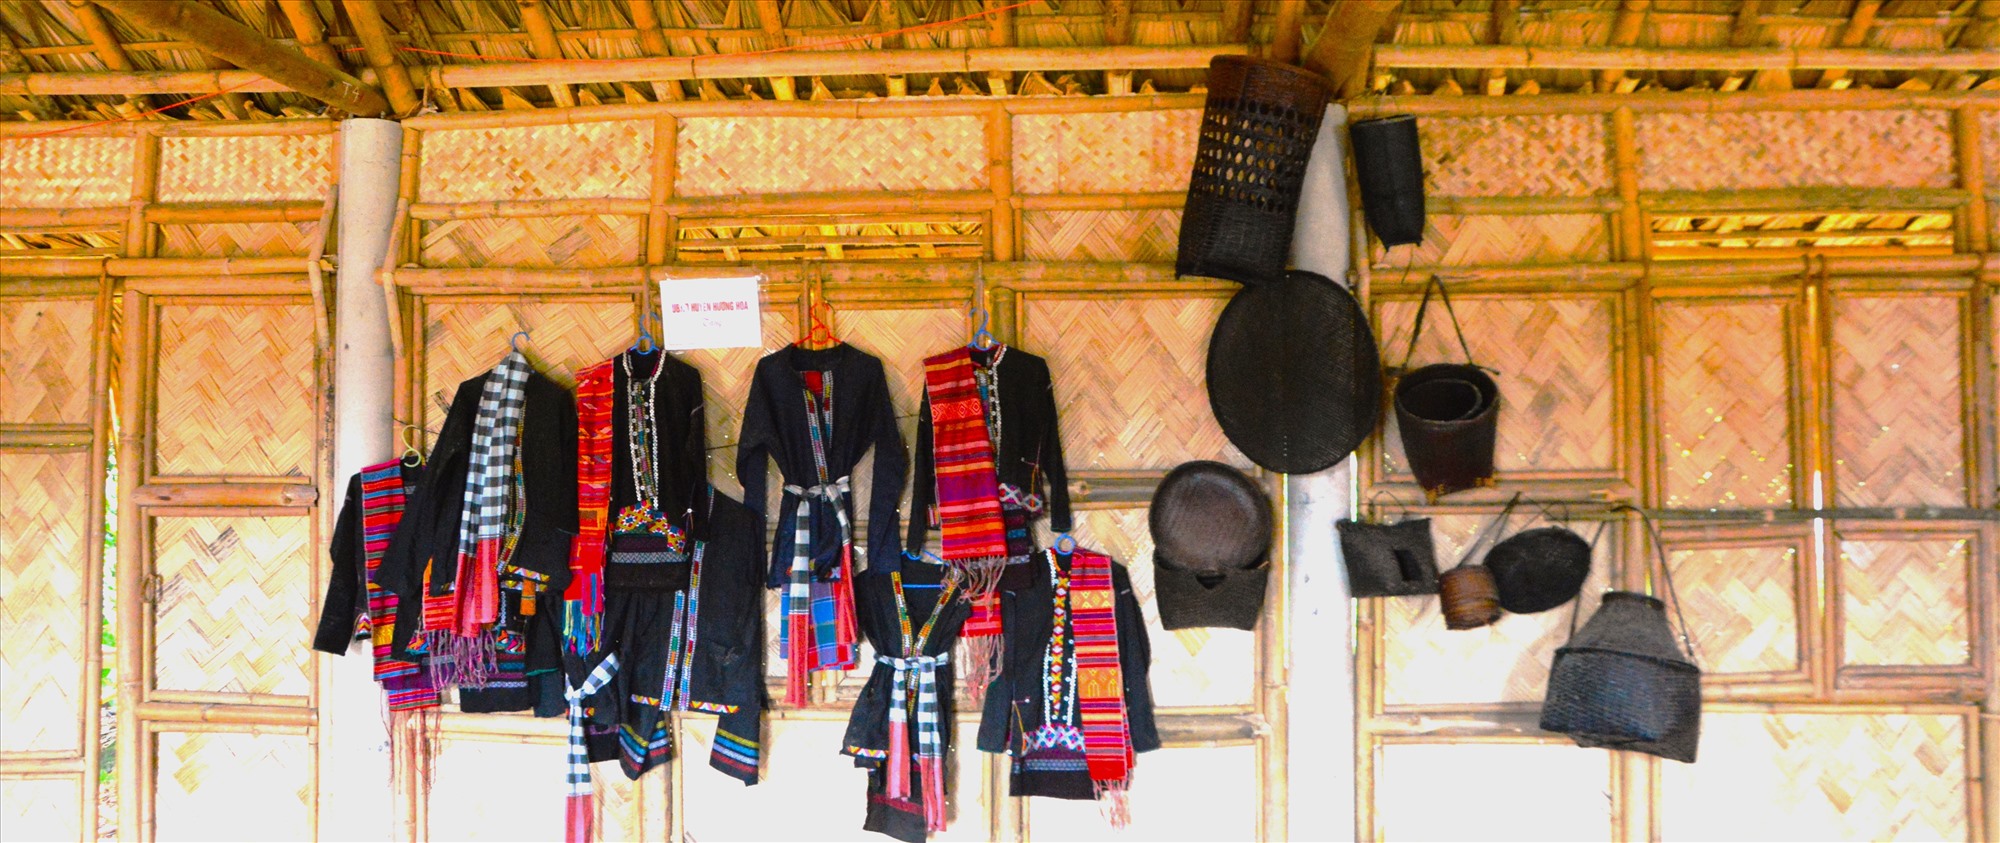 Những trang phục dụng cụ lao động của người đồng bào Vân Kiều được trưng bày tại nhà sàn truyền thống ở cụm dân cư Rờ Ve